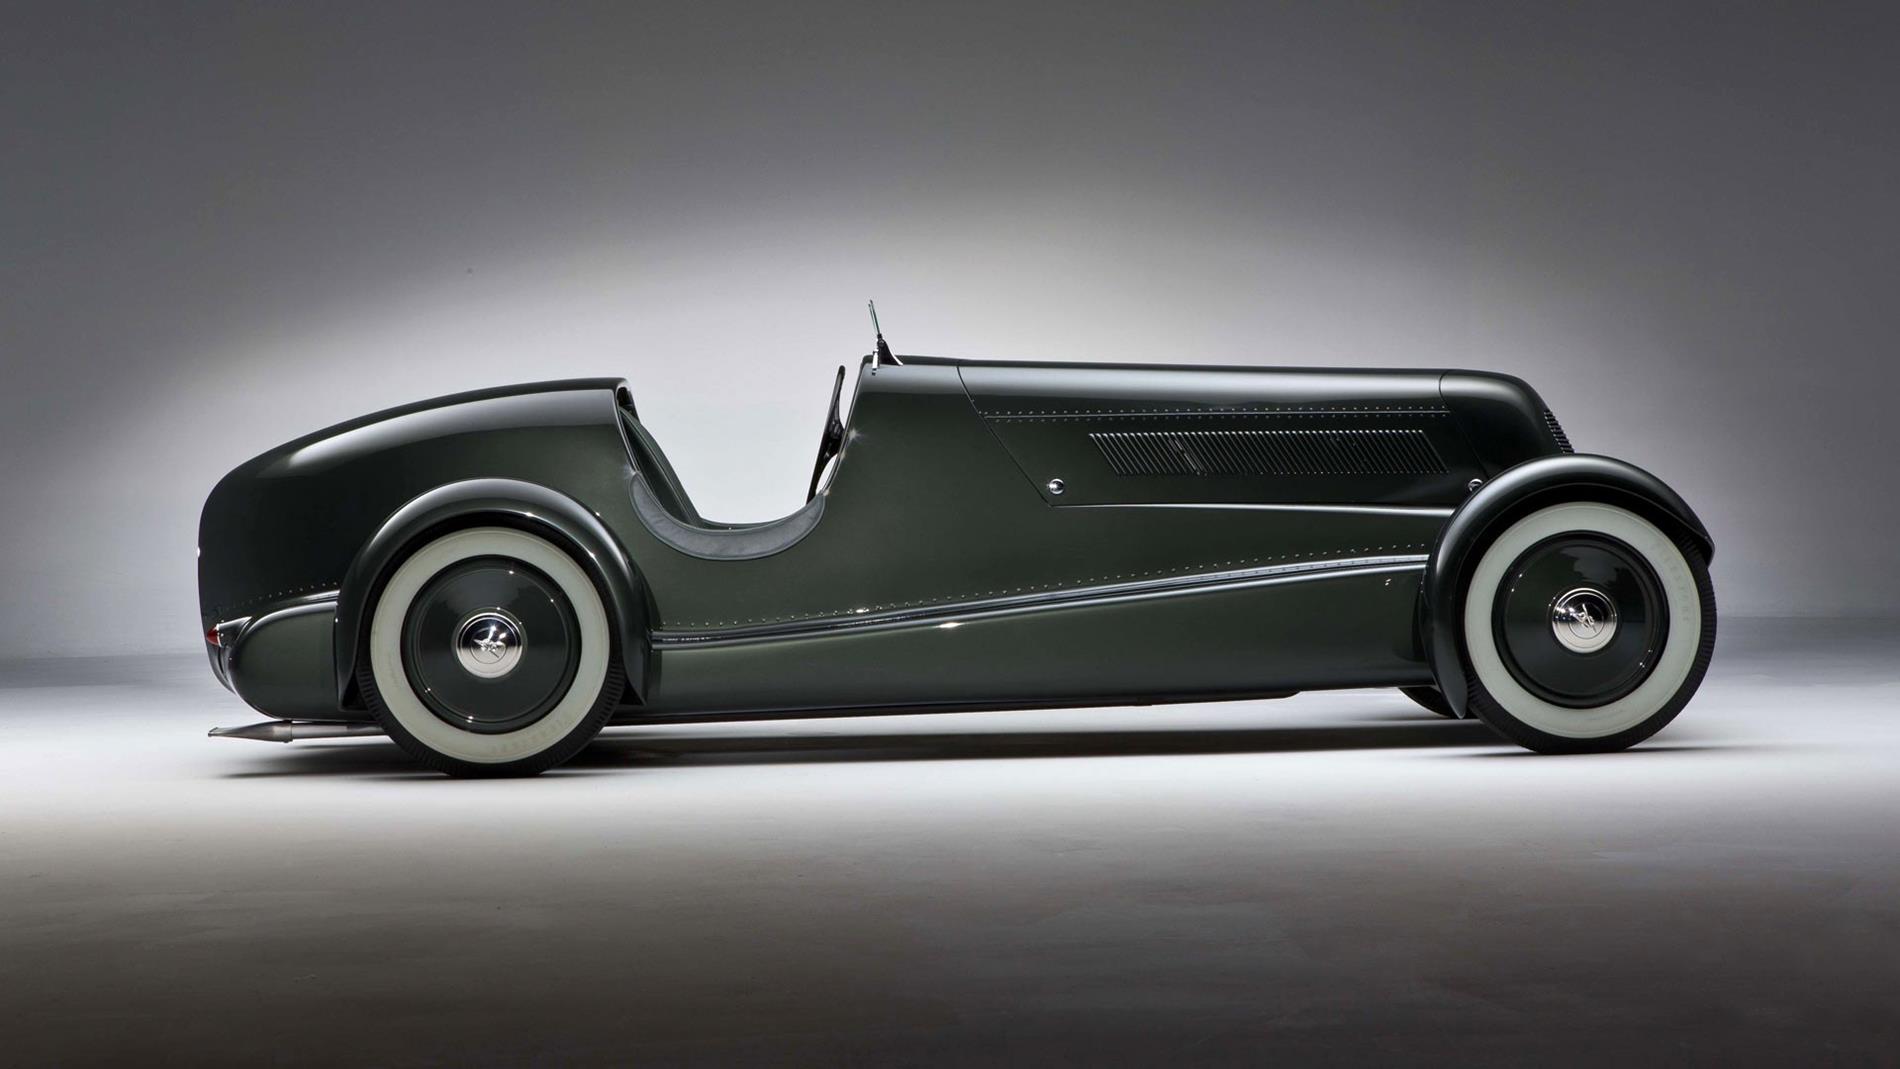 30 The Best Vintage Cars | Sky Rye Design